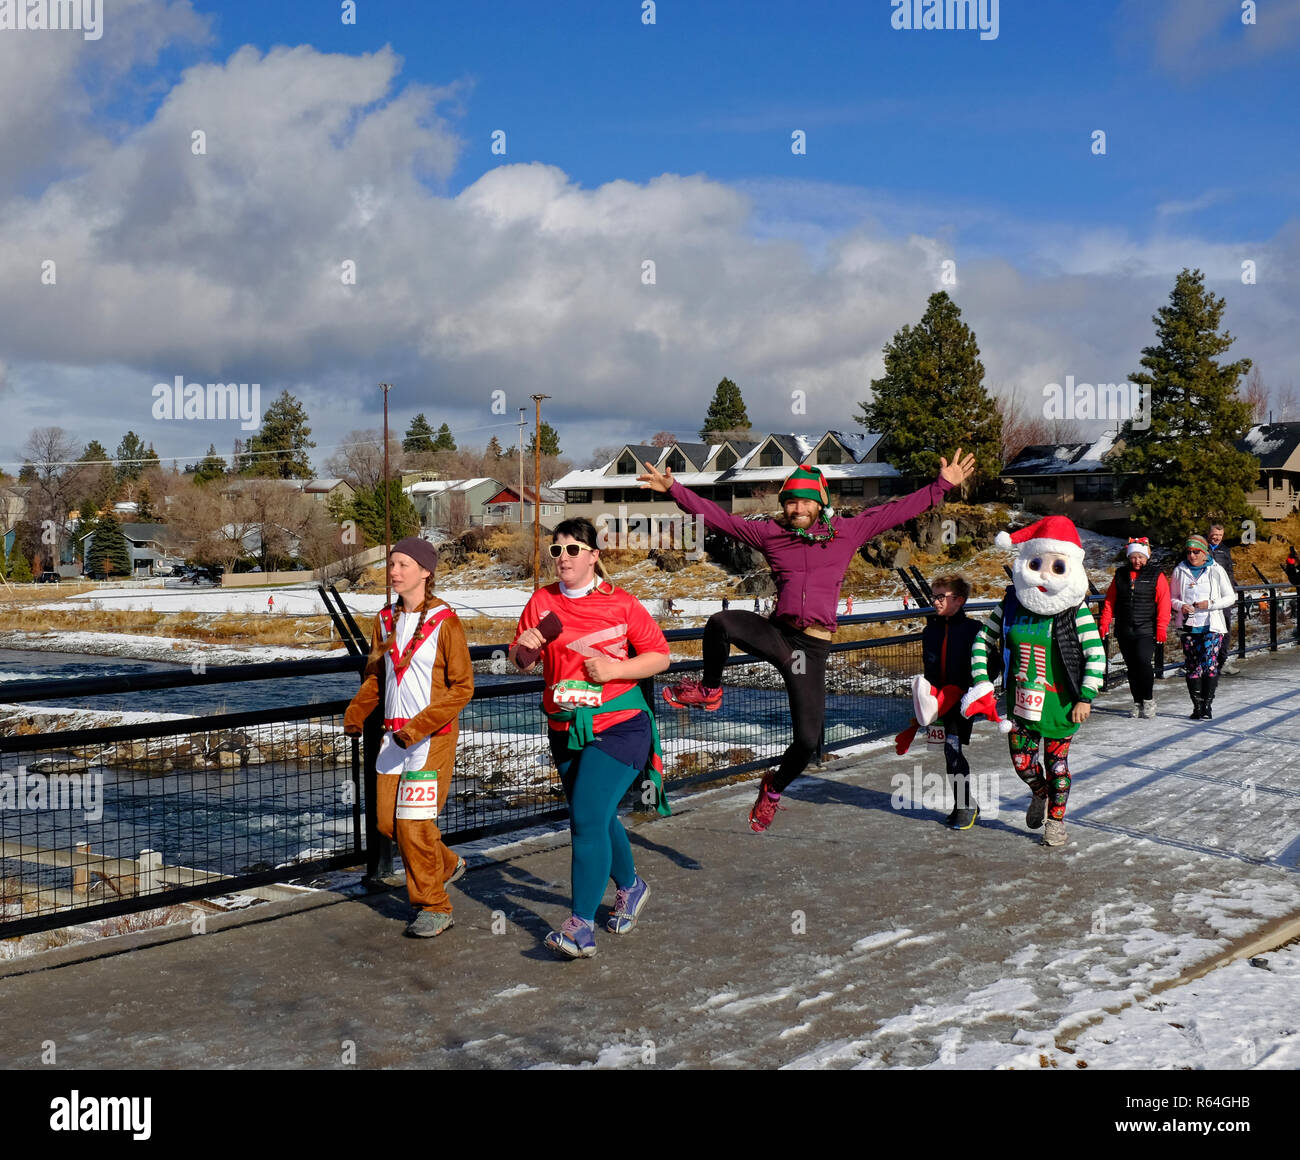 Los corredores y caminantes en traje tomar parte en un evento anual de caridad que apoya a la Fundación de Artritis llamada el Jingle Bell ejecutar, celebrada en Bend, oh Foto de stock